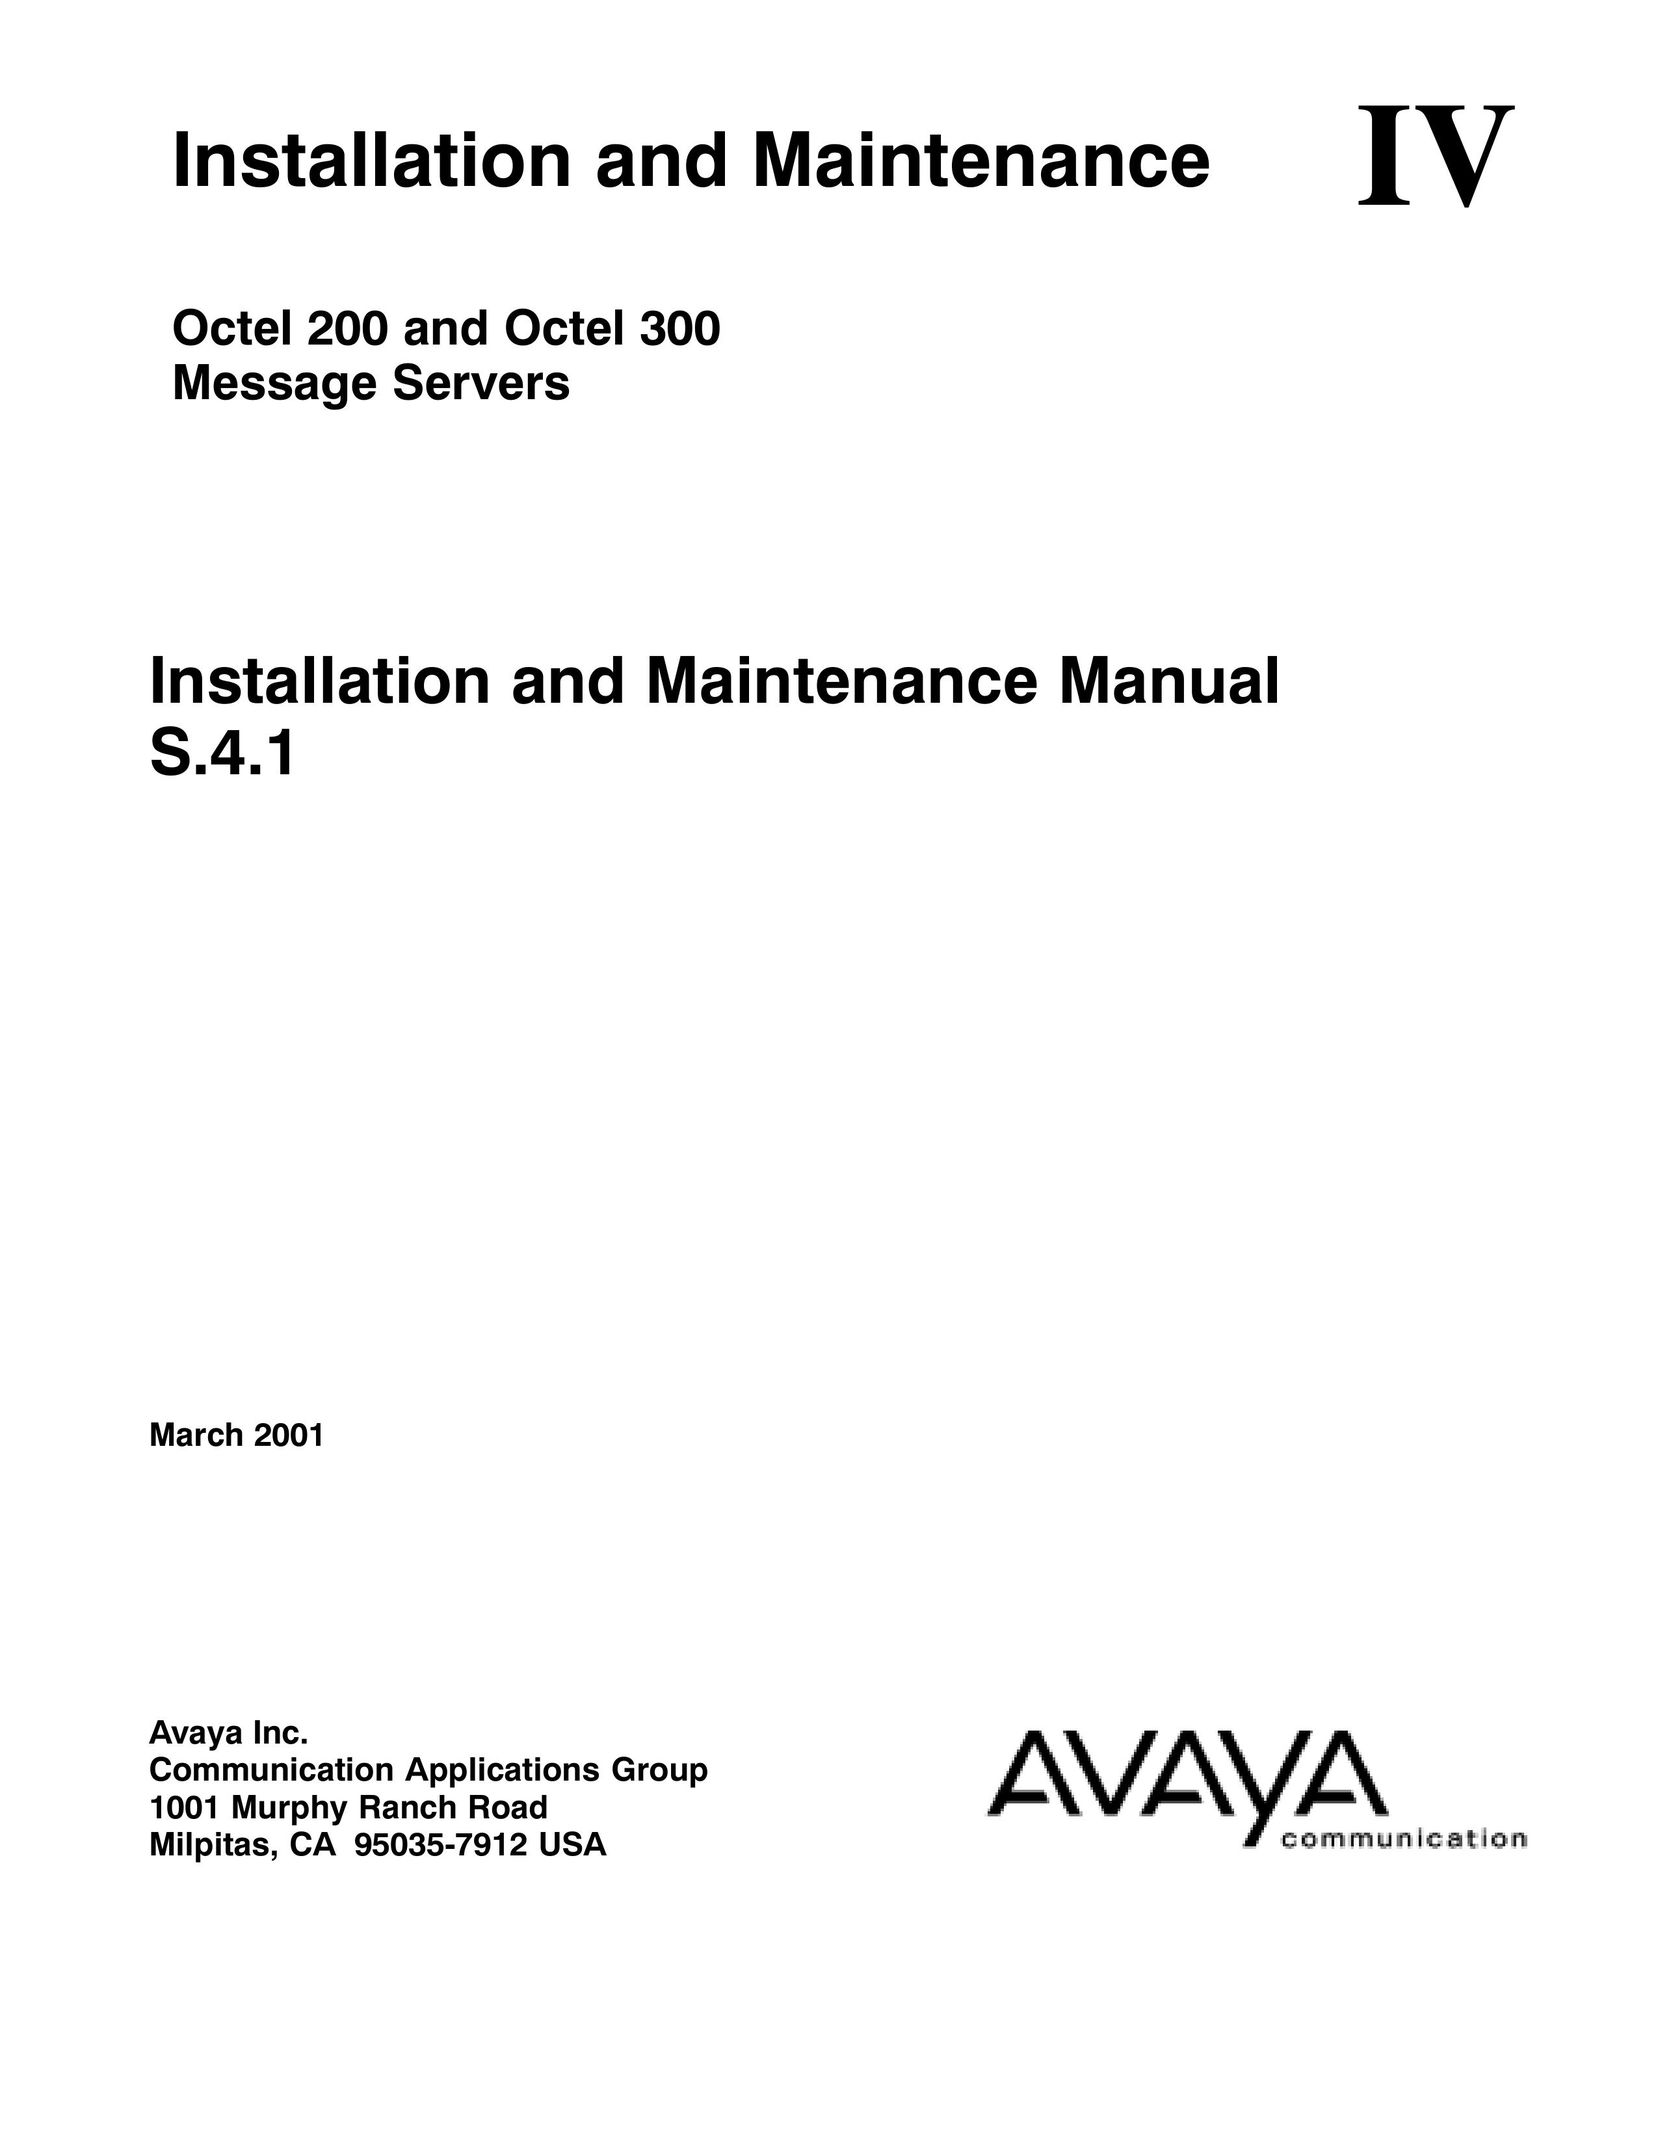 Avaya Octel 300 Server User Manual